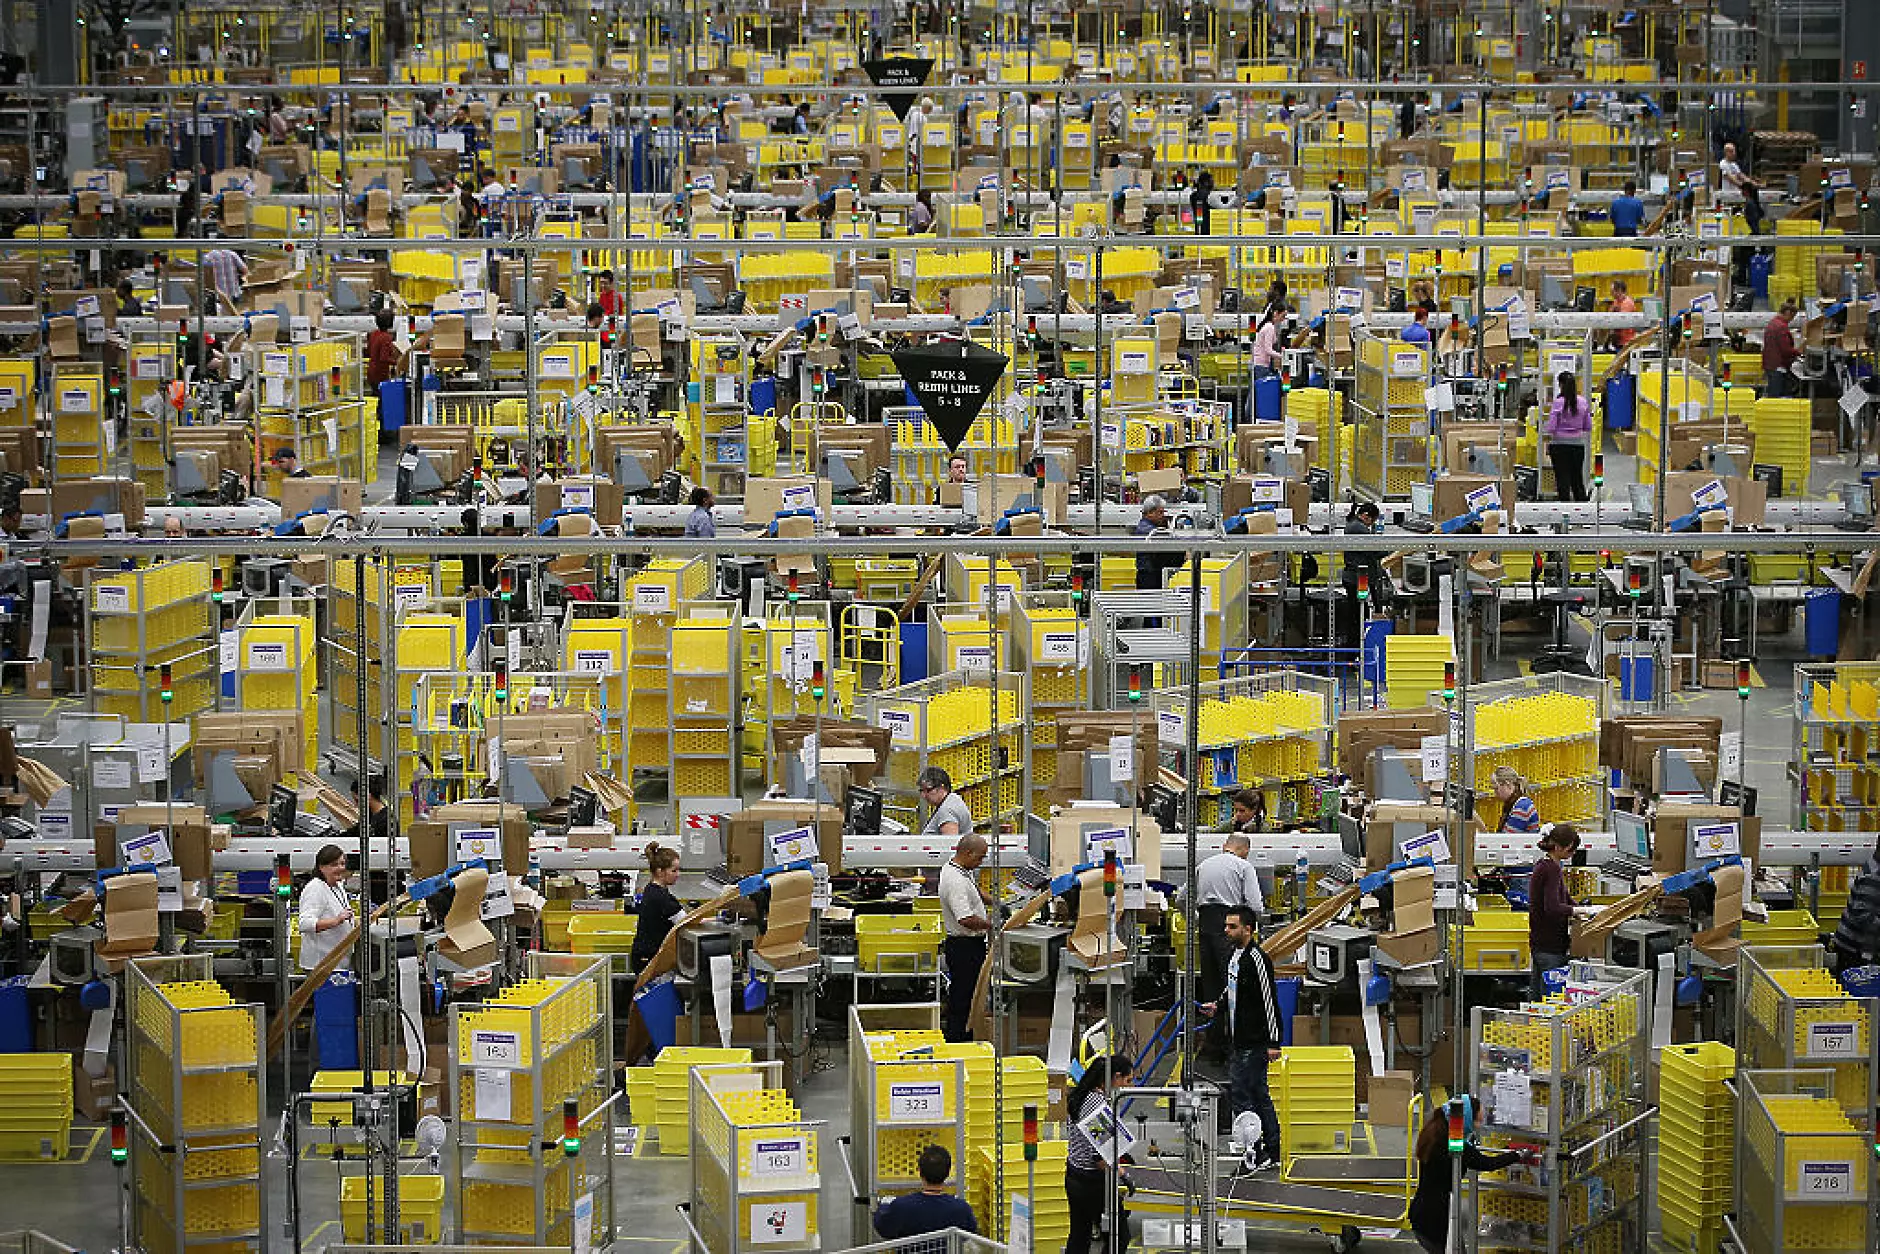 Amazon пуска нови роботи и дронове, за да ускори роботизацията на логистиката